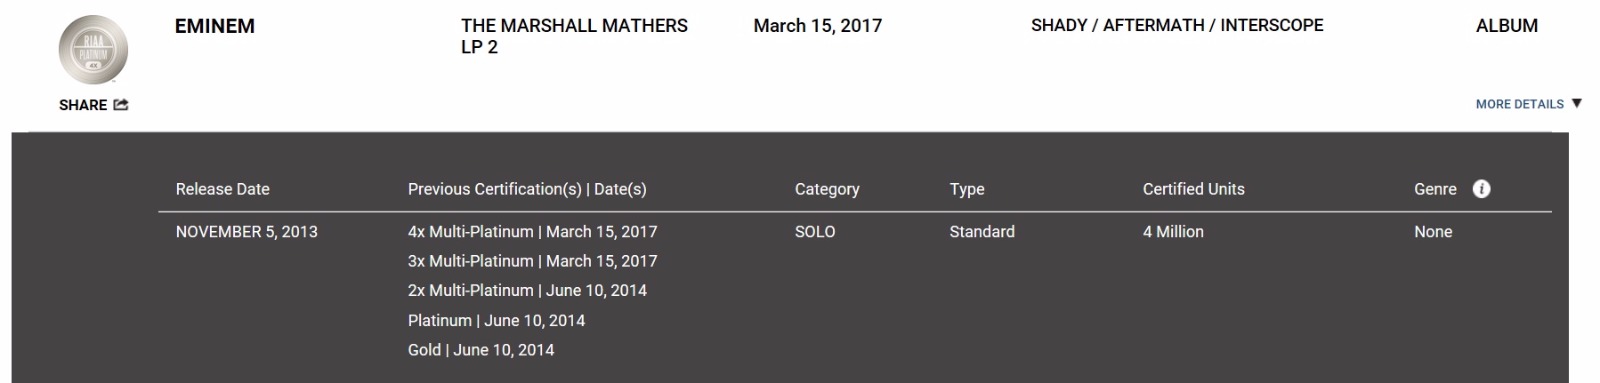 Eminem Certificazioni Album RIAA